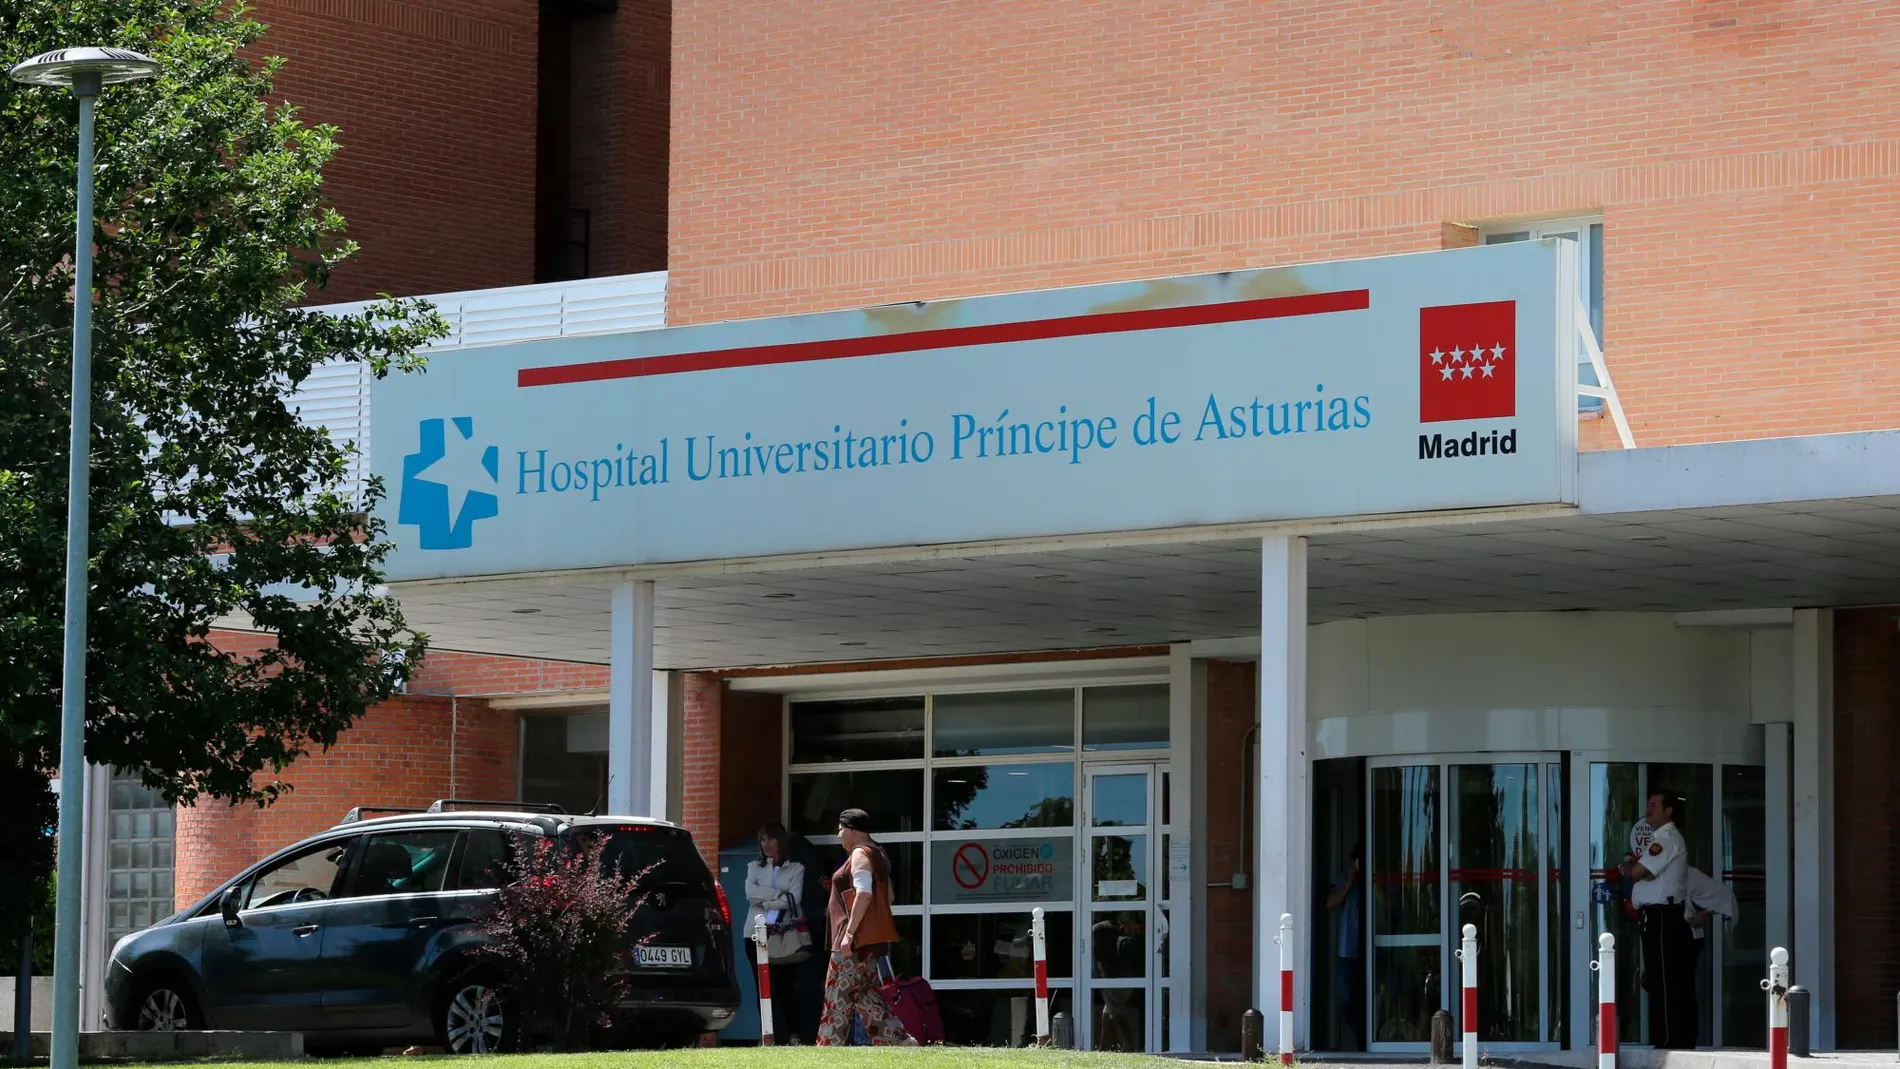 Era el médico que gestionaba este hospital de Alcalá de Henares. Y, además, lo hacia muy bien | Rubén Mondelo